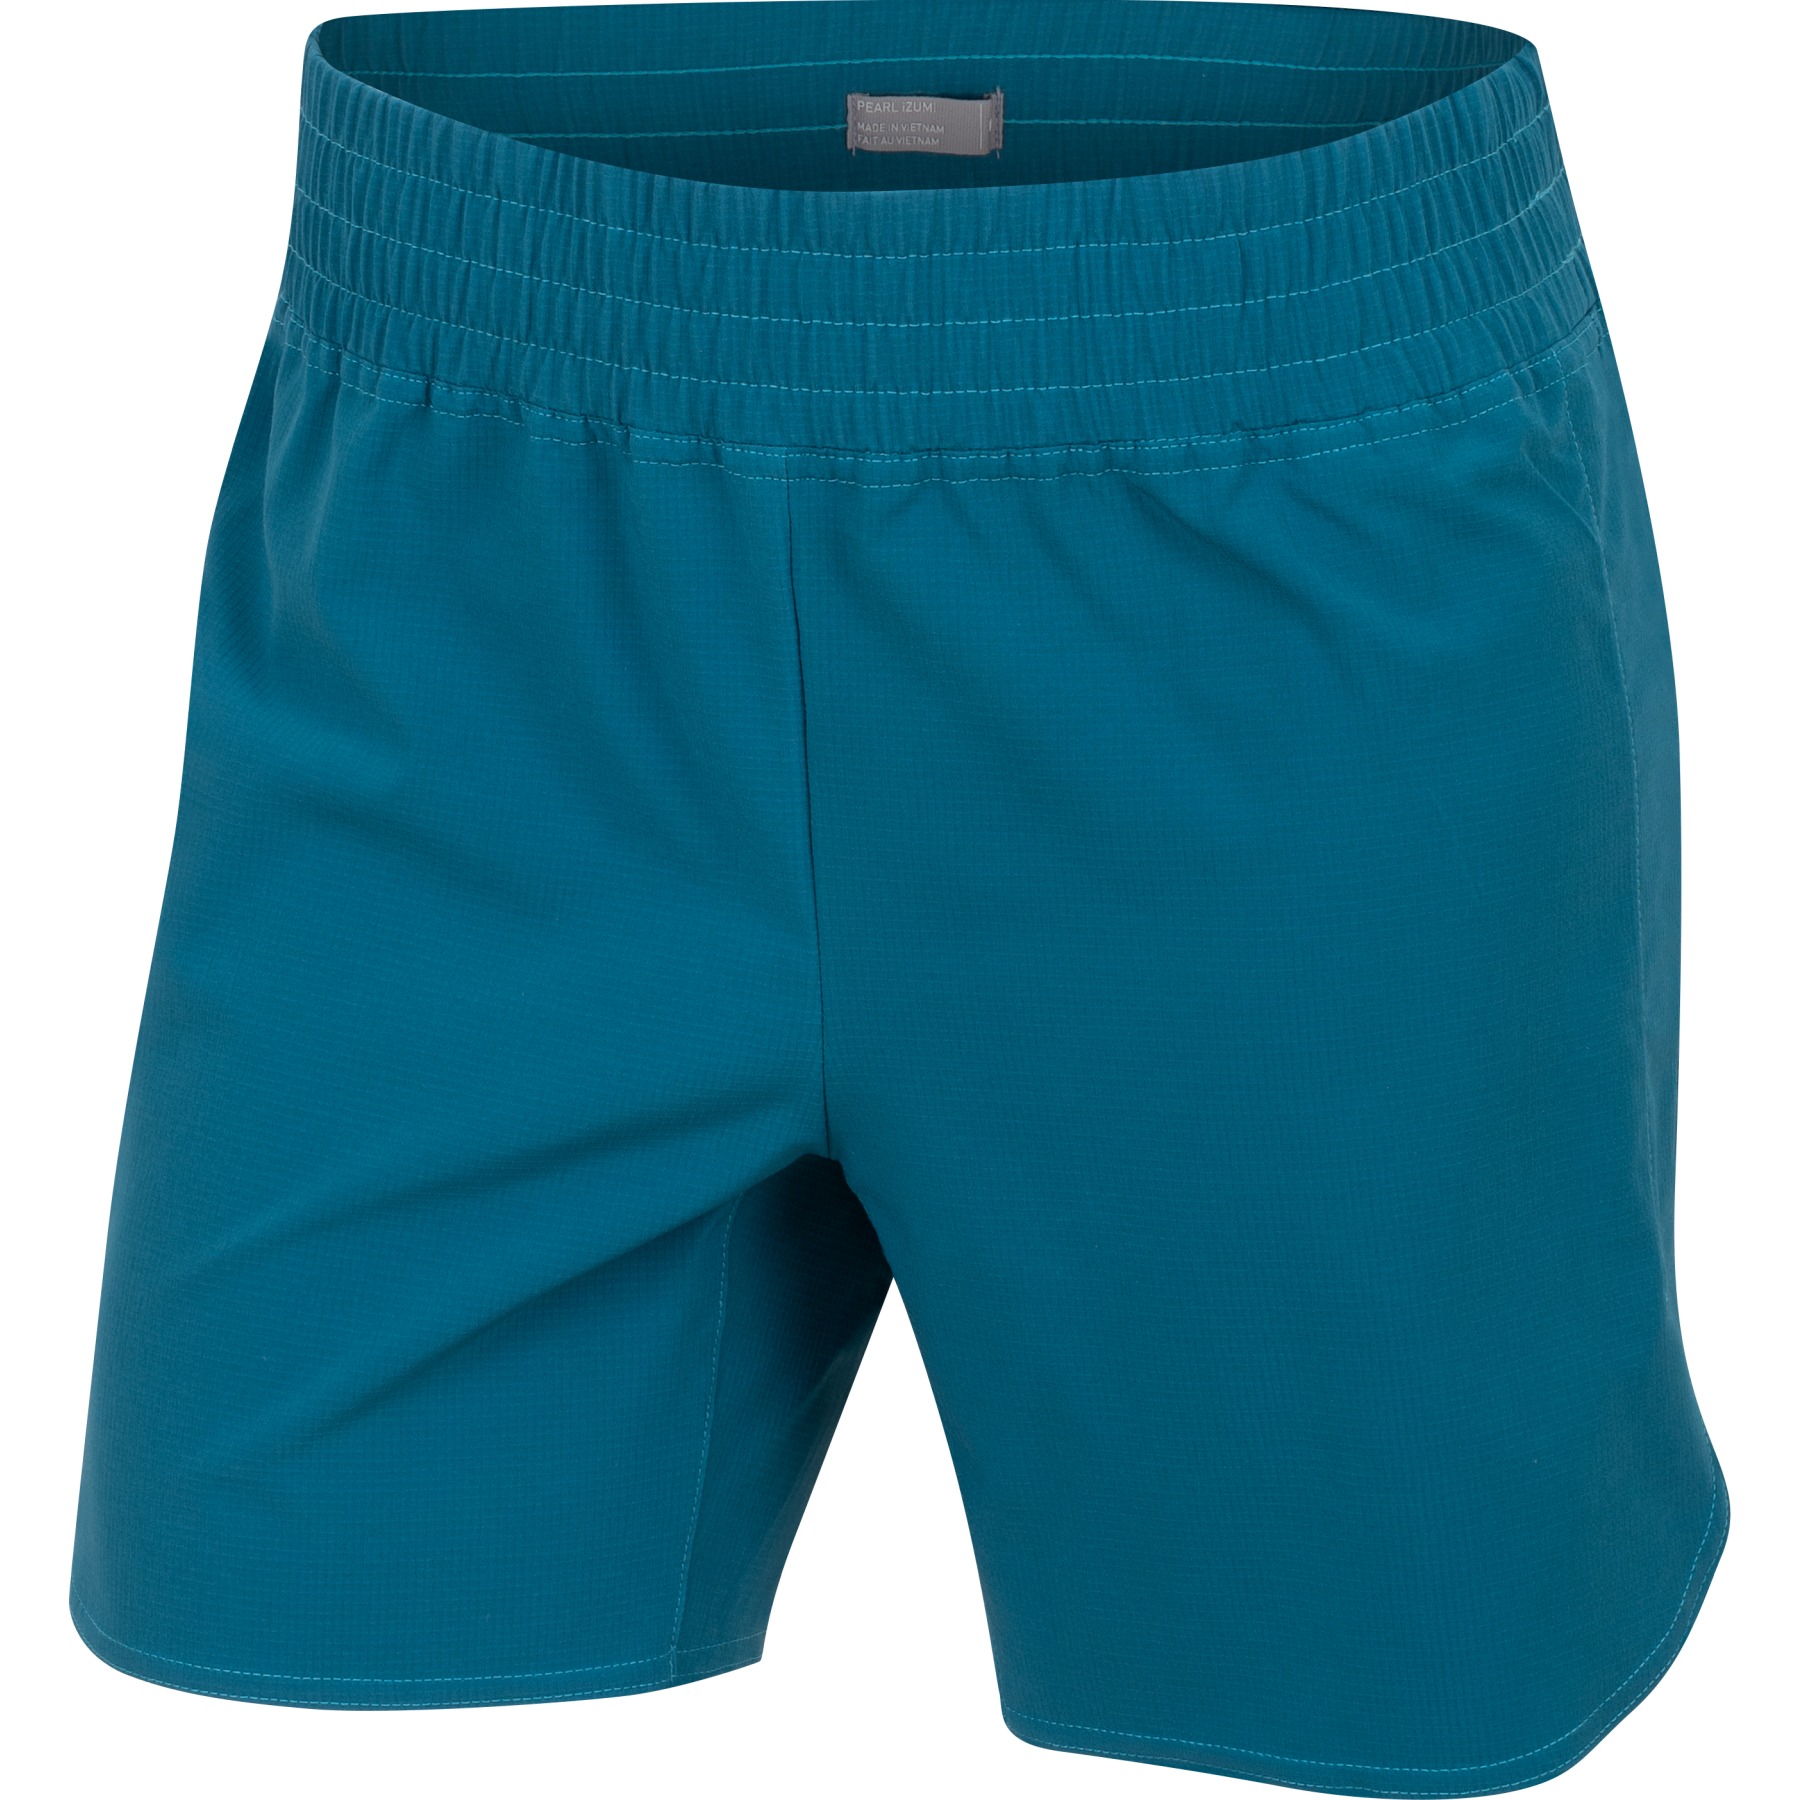 Produktbild von PEARL iZUMi Prospect 2-in-1 Shorts mit Innenhose Damen 17212206 - ocean blue - H5M